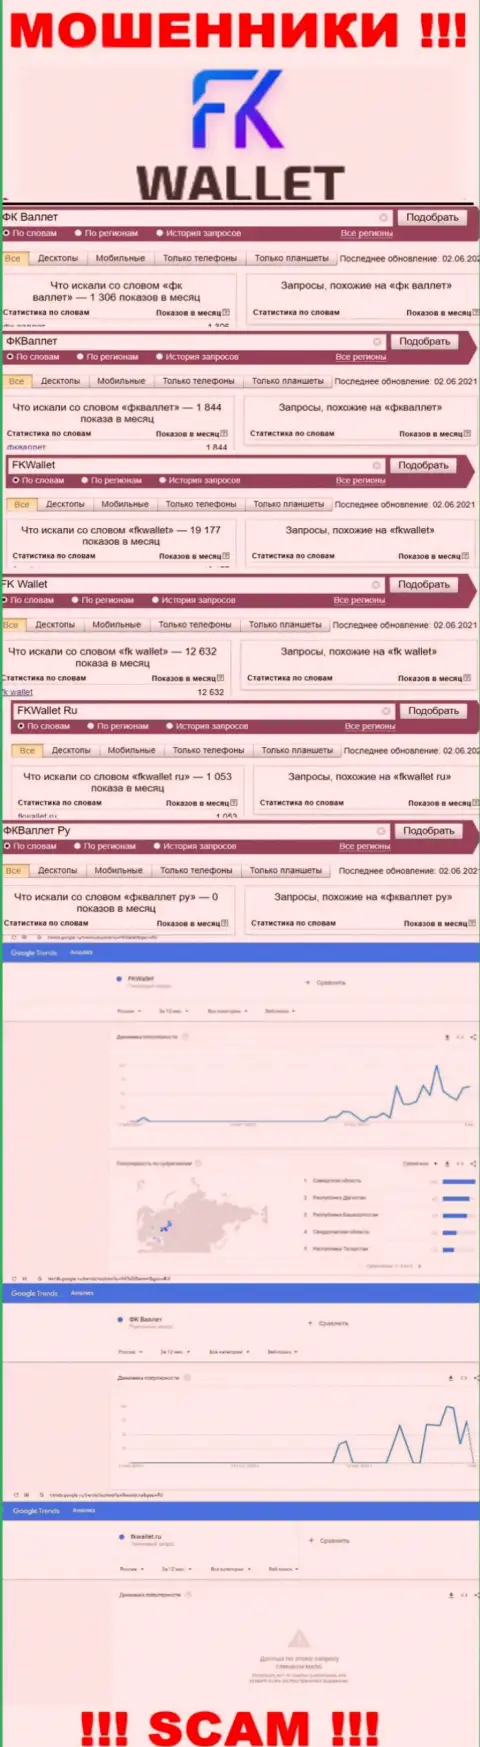 Скрин результатов онлайн запросов по неправомерно действующей конторе ФКВаллет